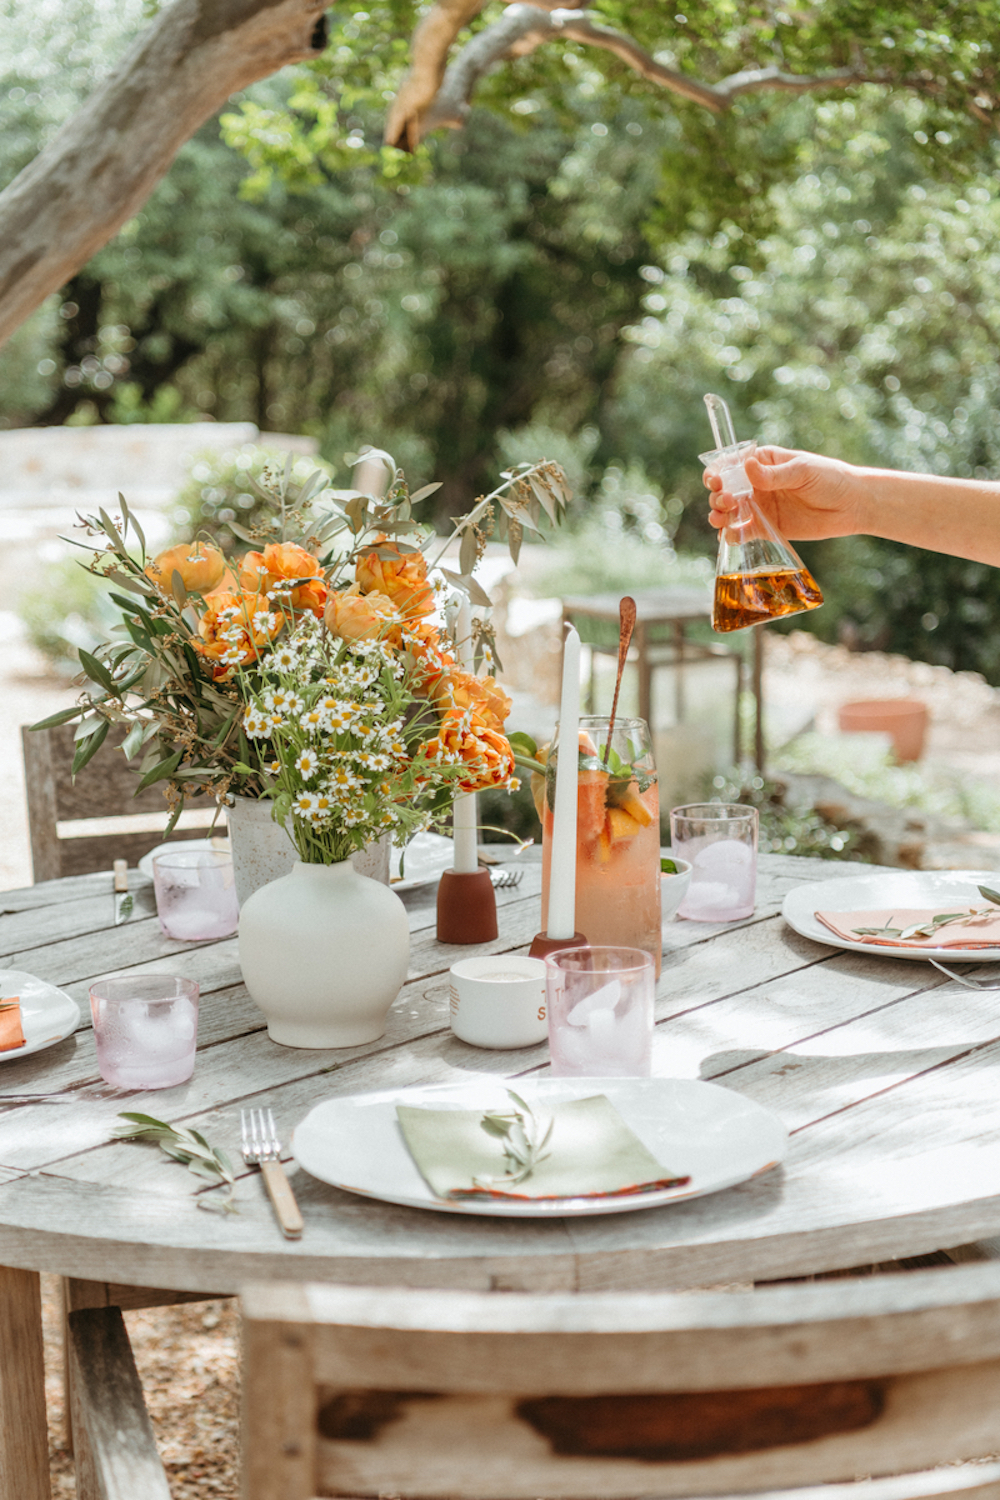 Mesa de comedor soleada al aire libre con platos blancos, servilletas de lino gris, cubiertos sencillos y un arreglo de eucalipto, flores de naranja y margaritas.